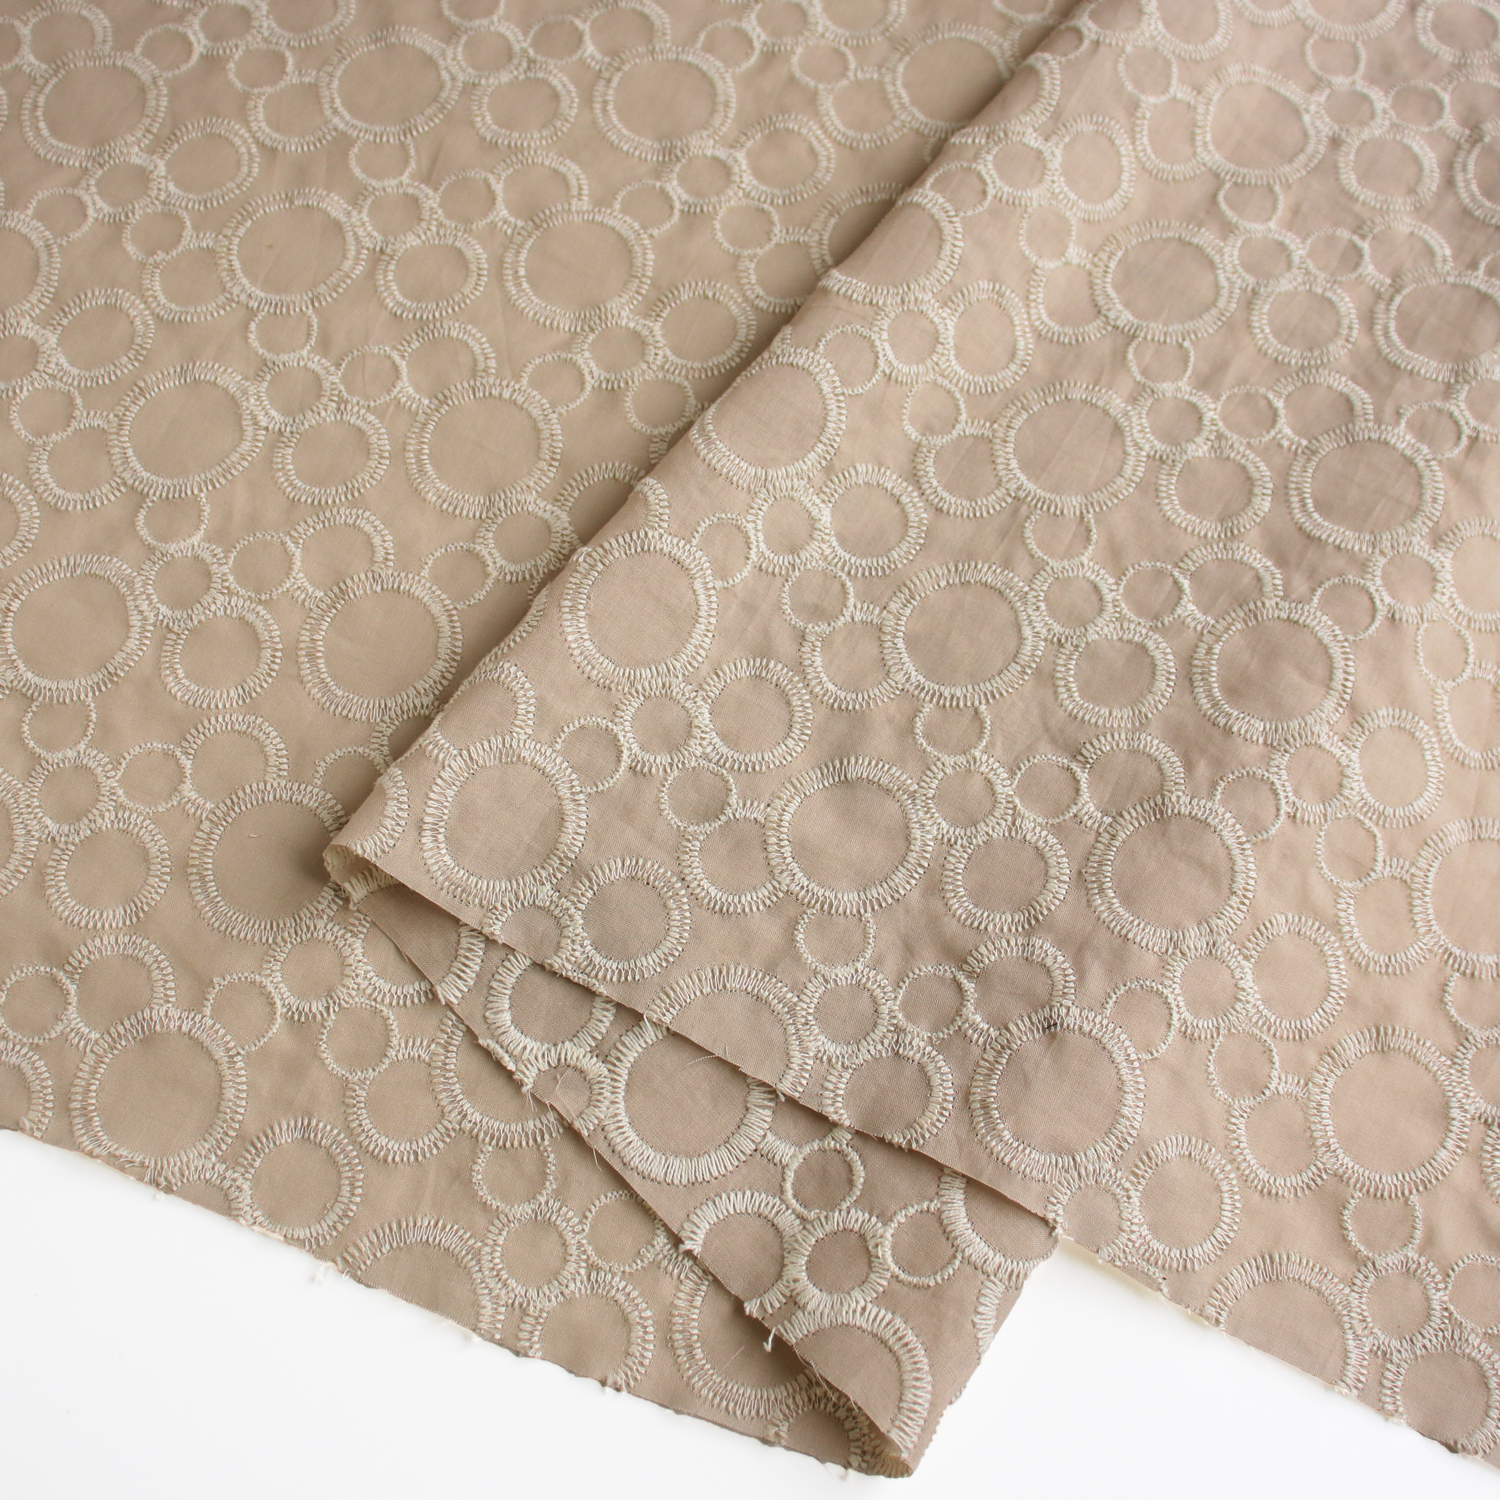 AL1186-182 cotton lace fabric, Width 100cm, 1m/unit (m)